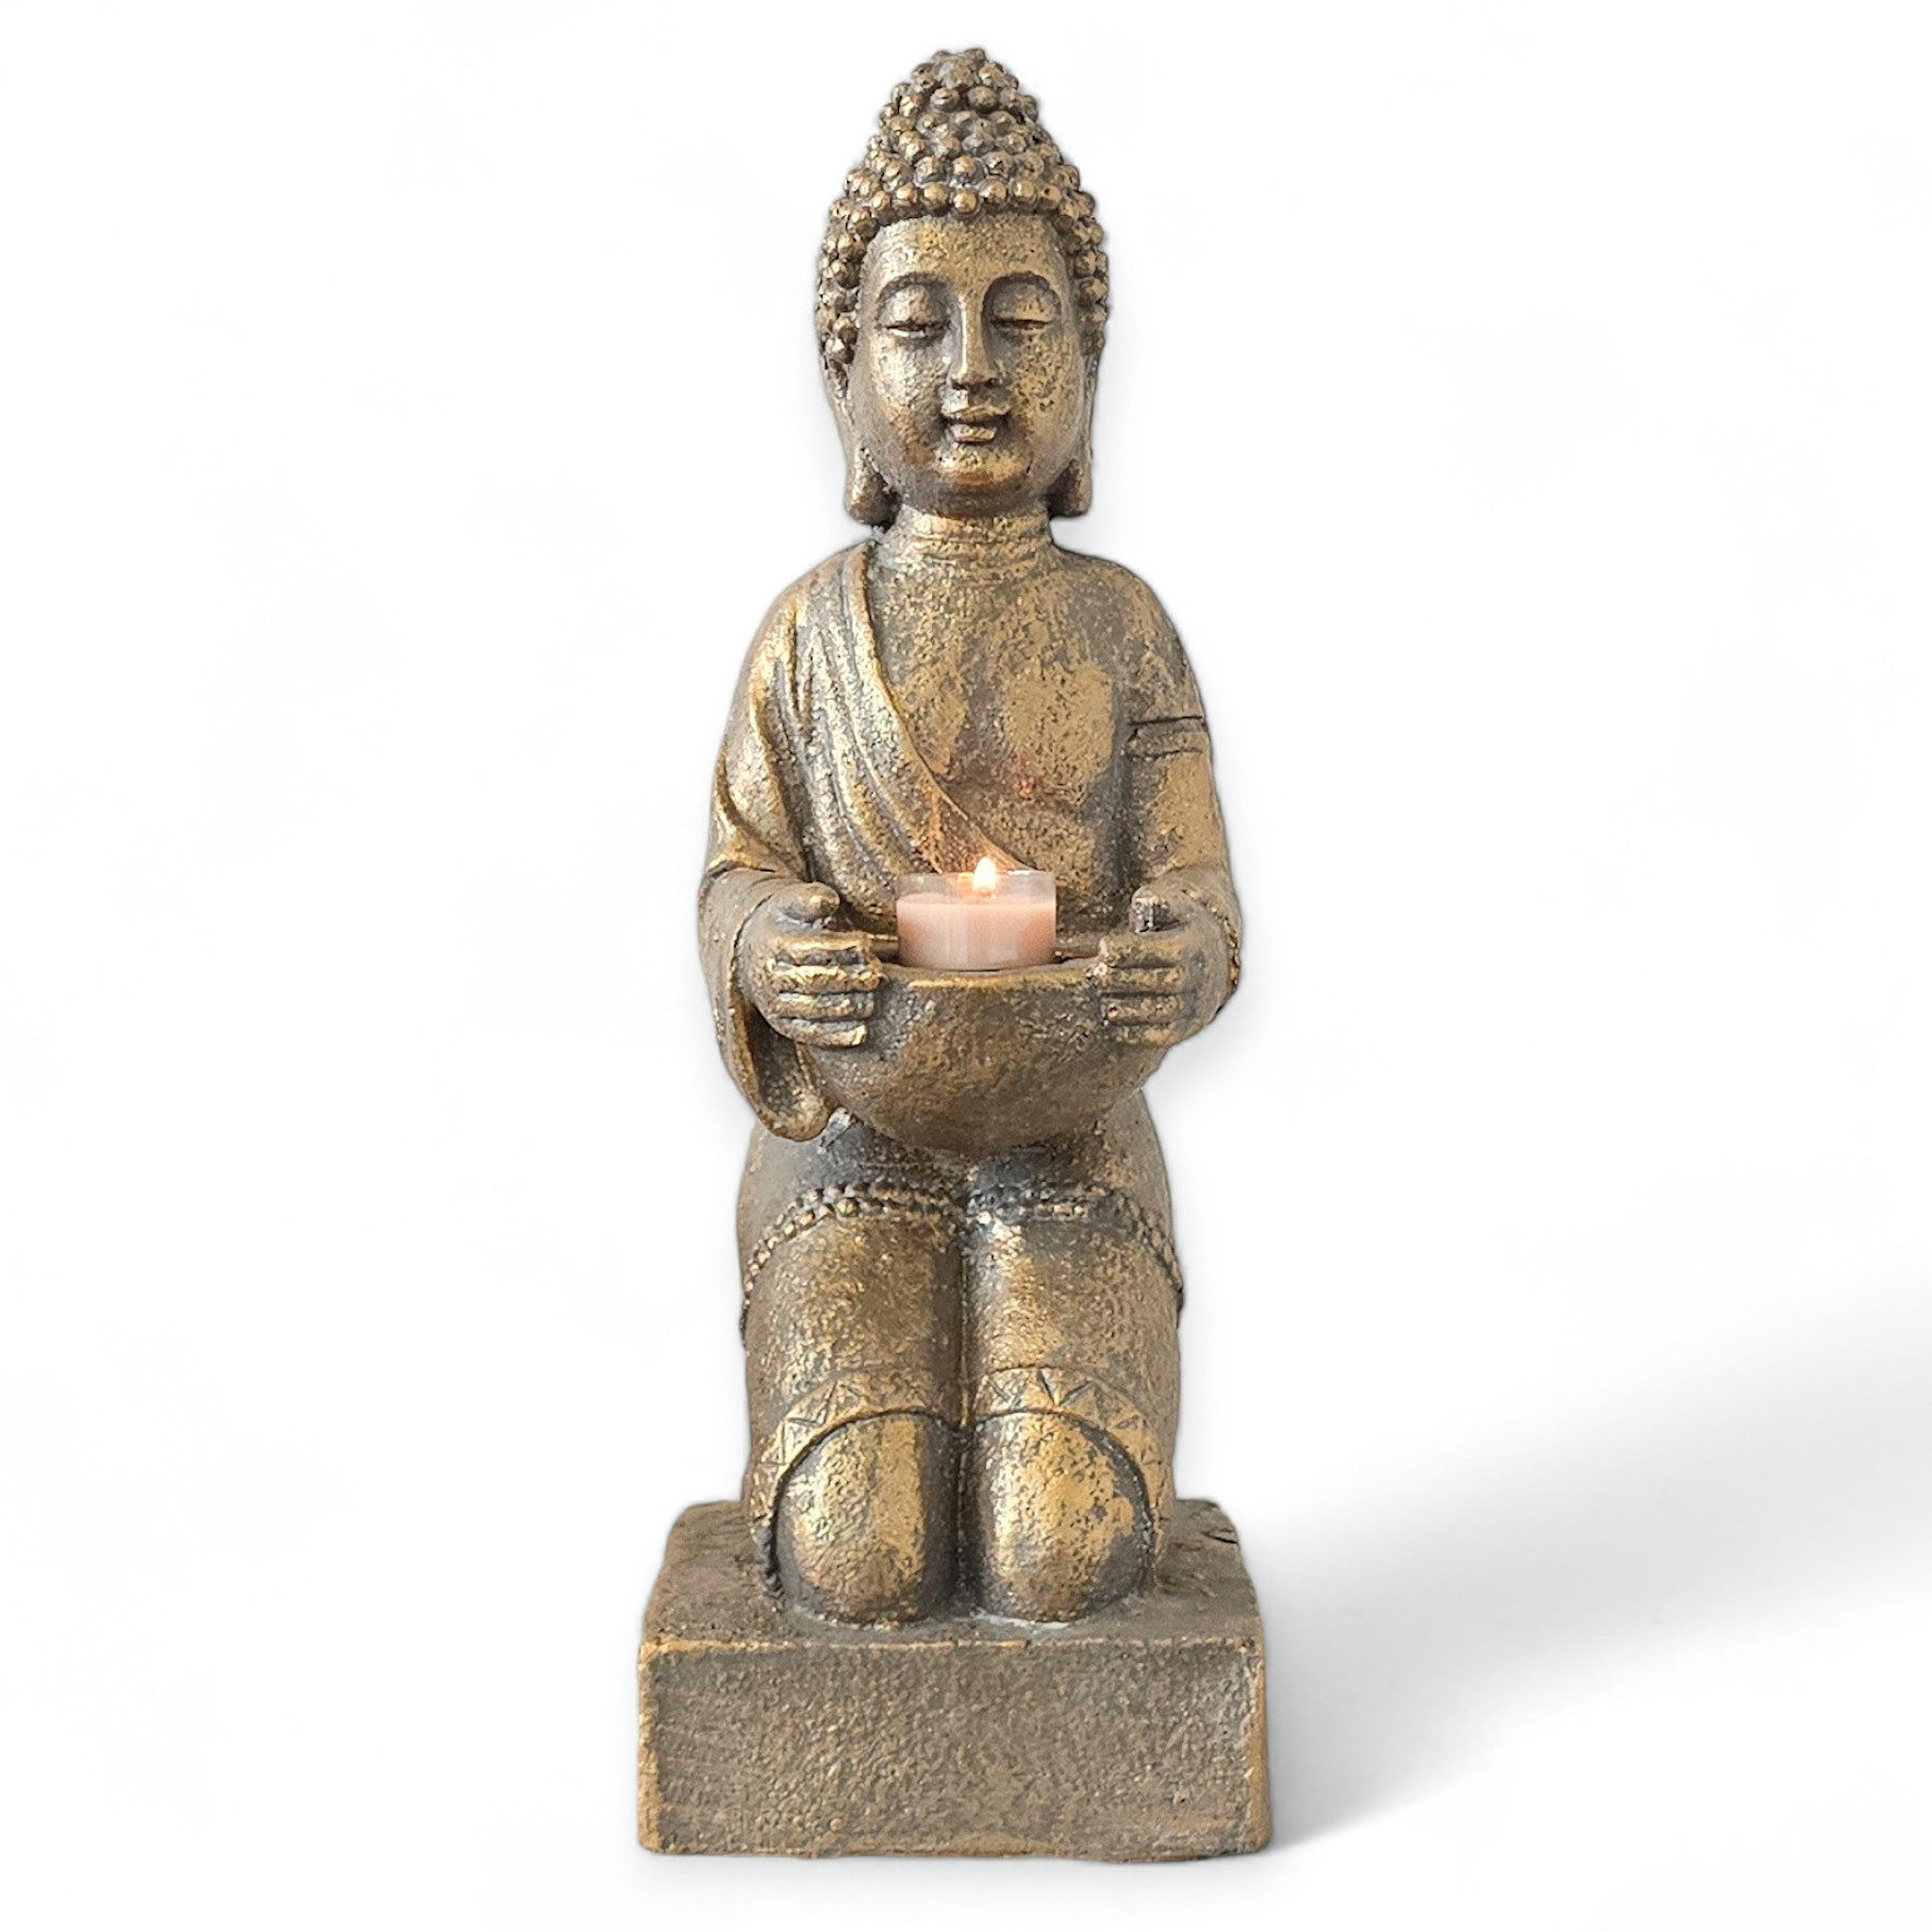 INtrenDU Buddhafigur Buddha Statue mit Teelichthalter bronze 42cm, mit Teelichthalter